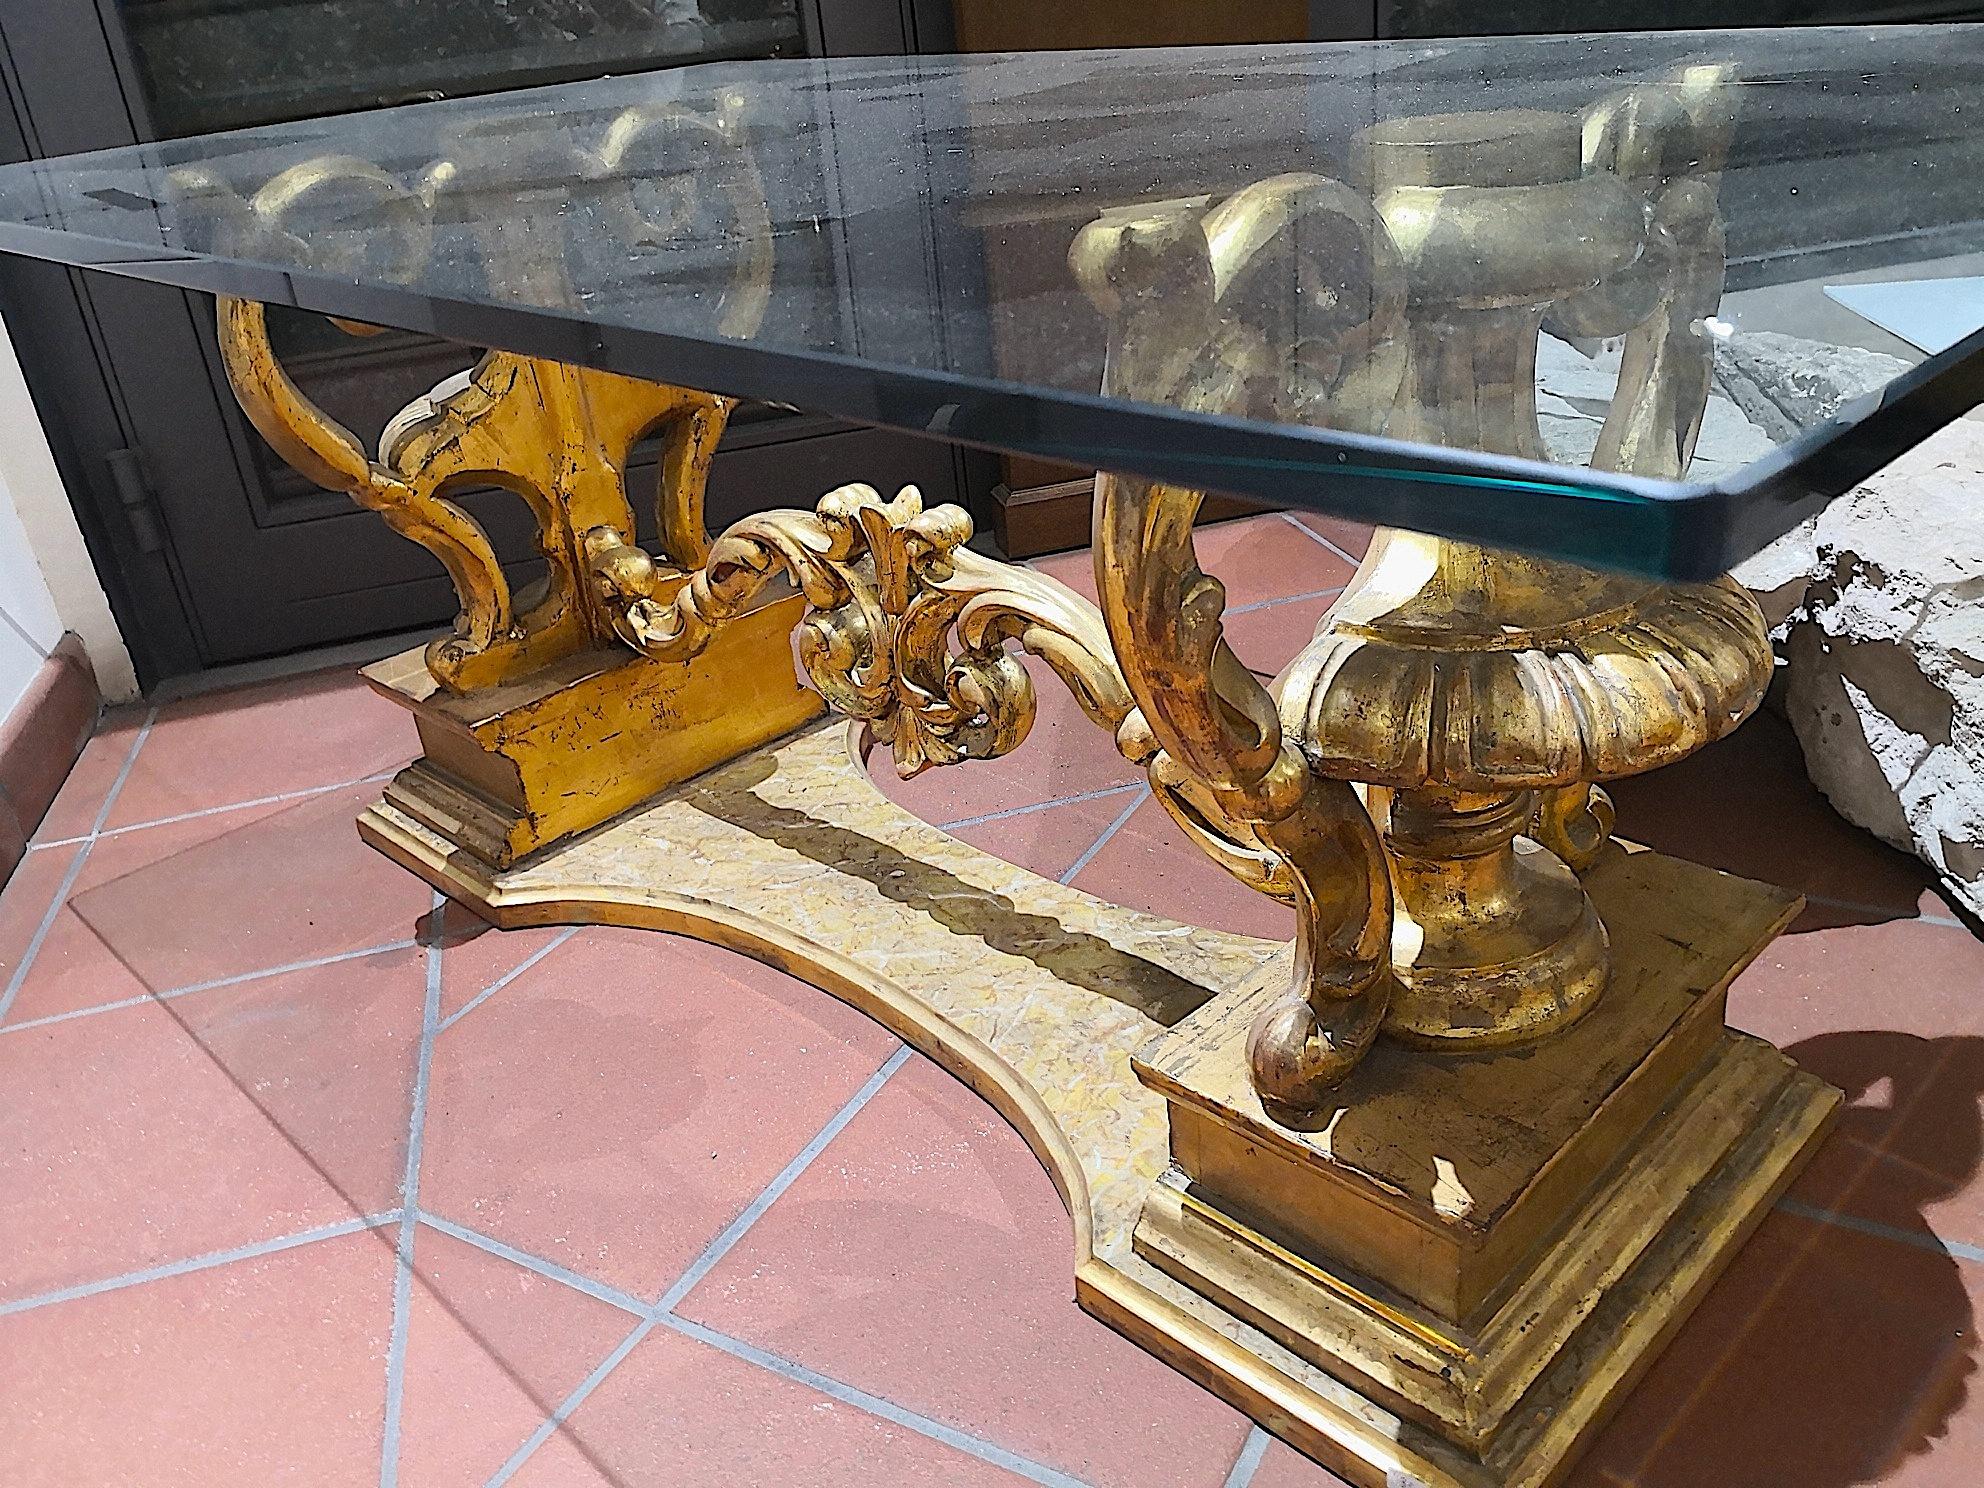 Une belle table basse à plateau en verre faite sur mesure à partir d'ornements anciens en bois doré sicilien de la fin du XVIIIe siècle, de style Louis XVI. Les ornements du vase ou de l'urne sont anciens, du 18e siècle, vers 1770. Ils sont en bois